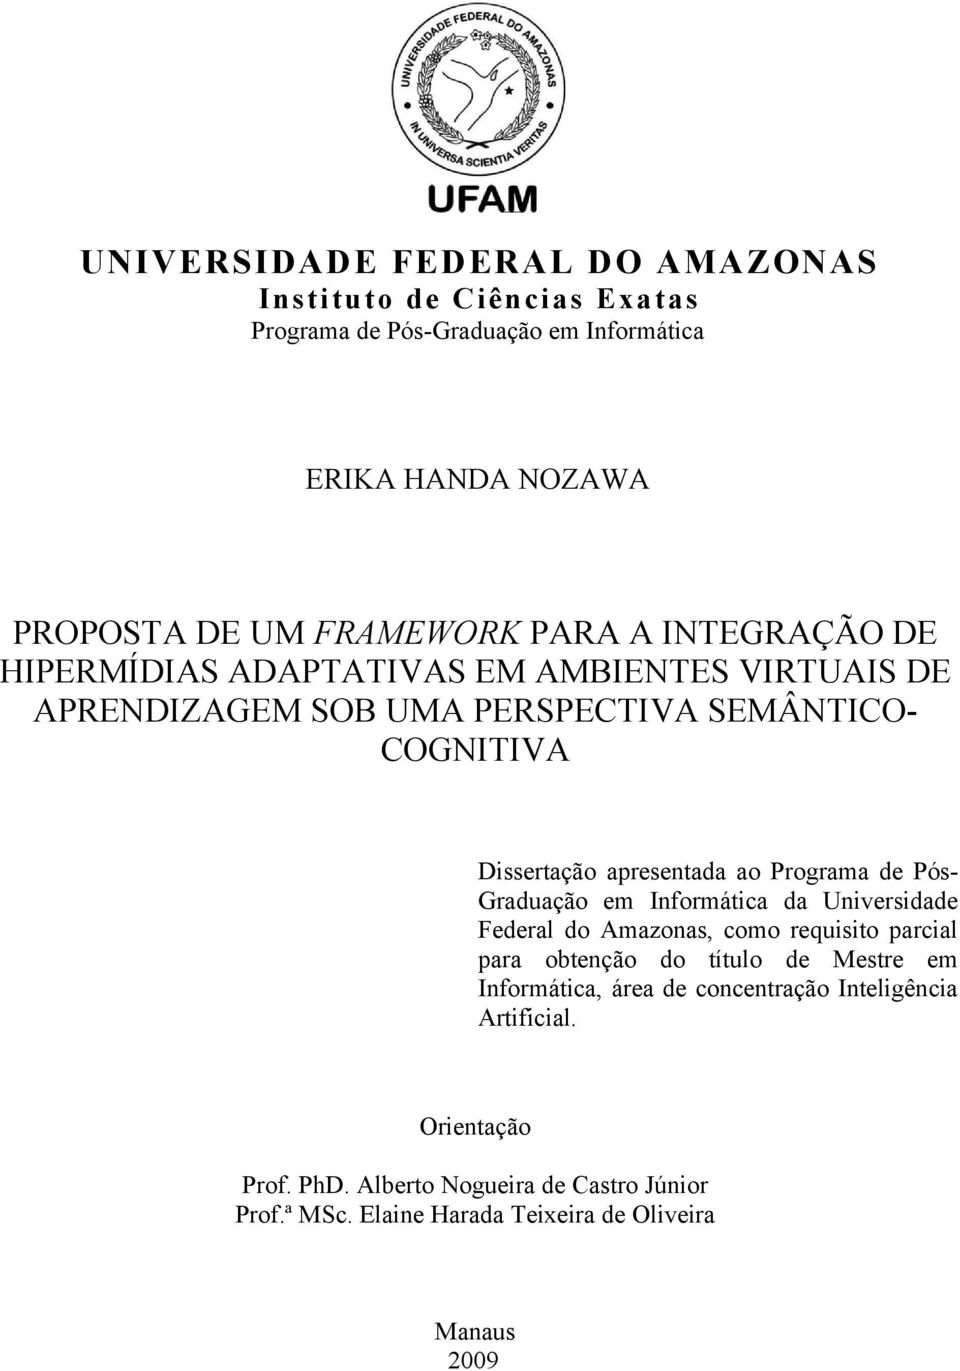 Programa de PósGraduação em Informática da Universidade Federal do Amazonas, como requisito parcial para obtenção do título de Mestre em Informática,